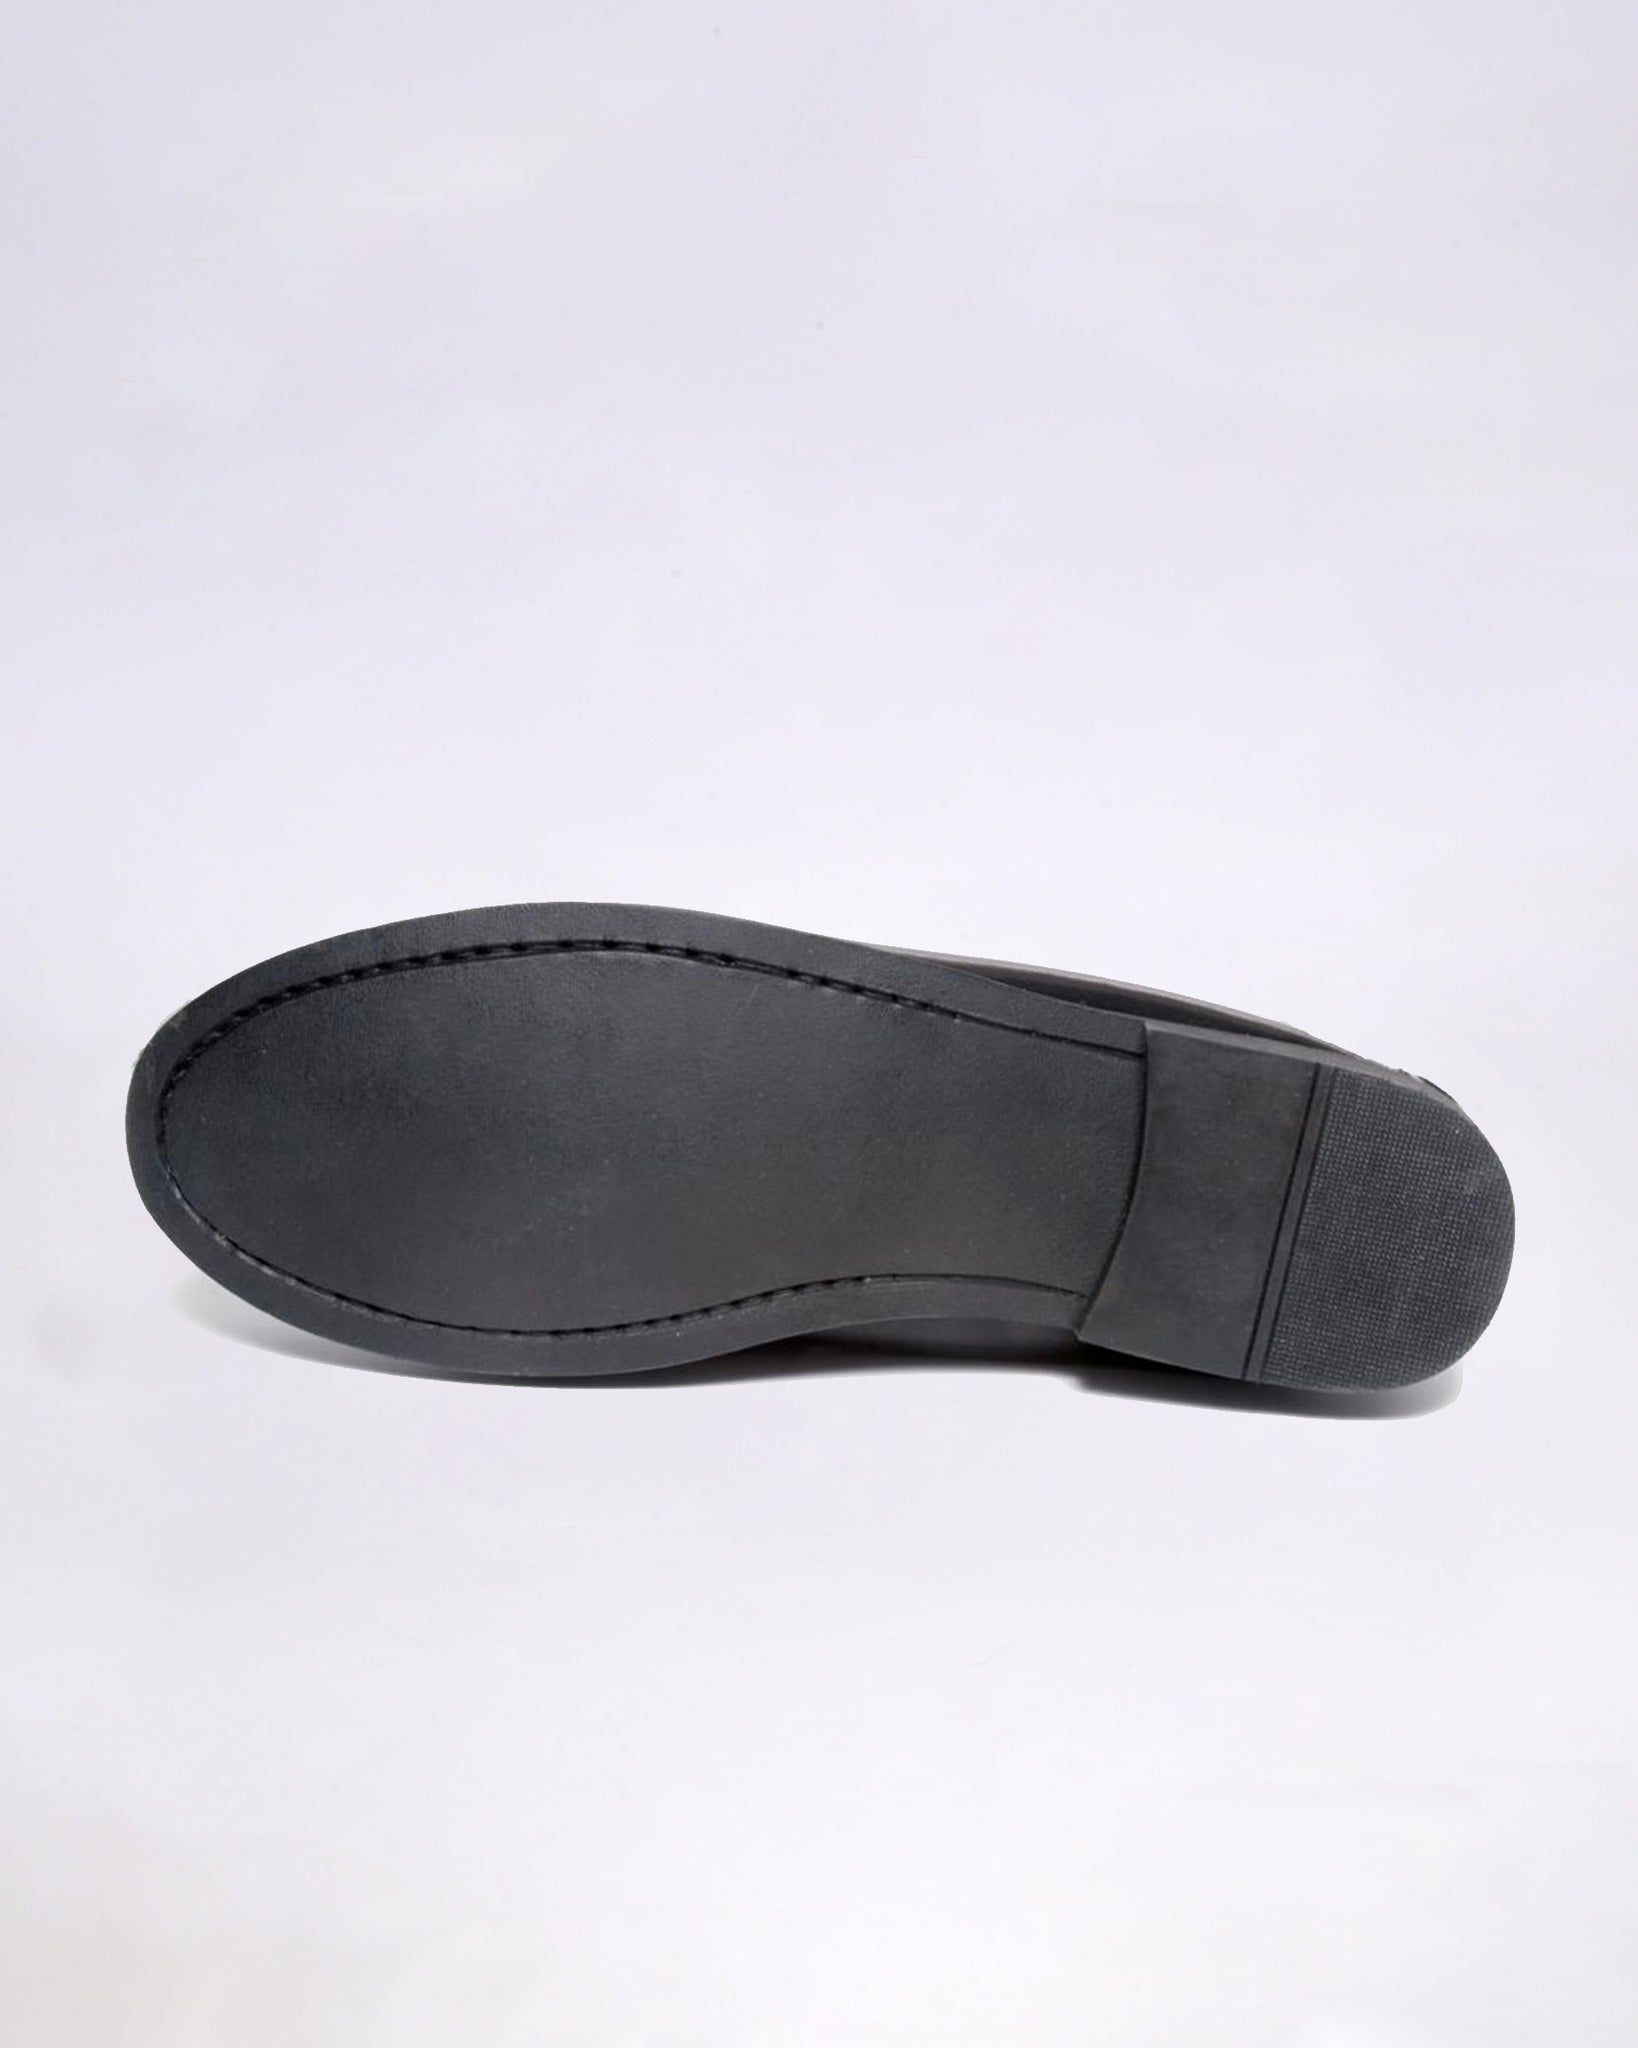 Zapato Escolar Talla Grande - Mocasín de Piel Negro Antic Brillo Unisex